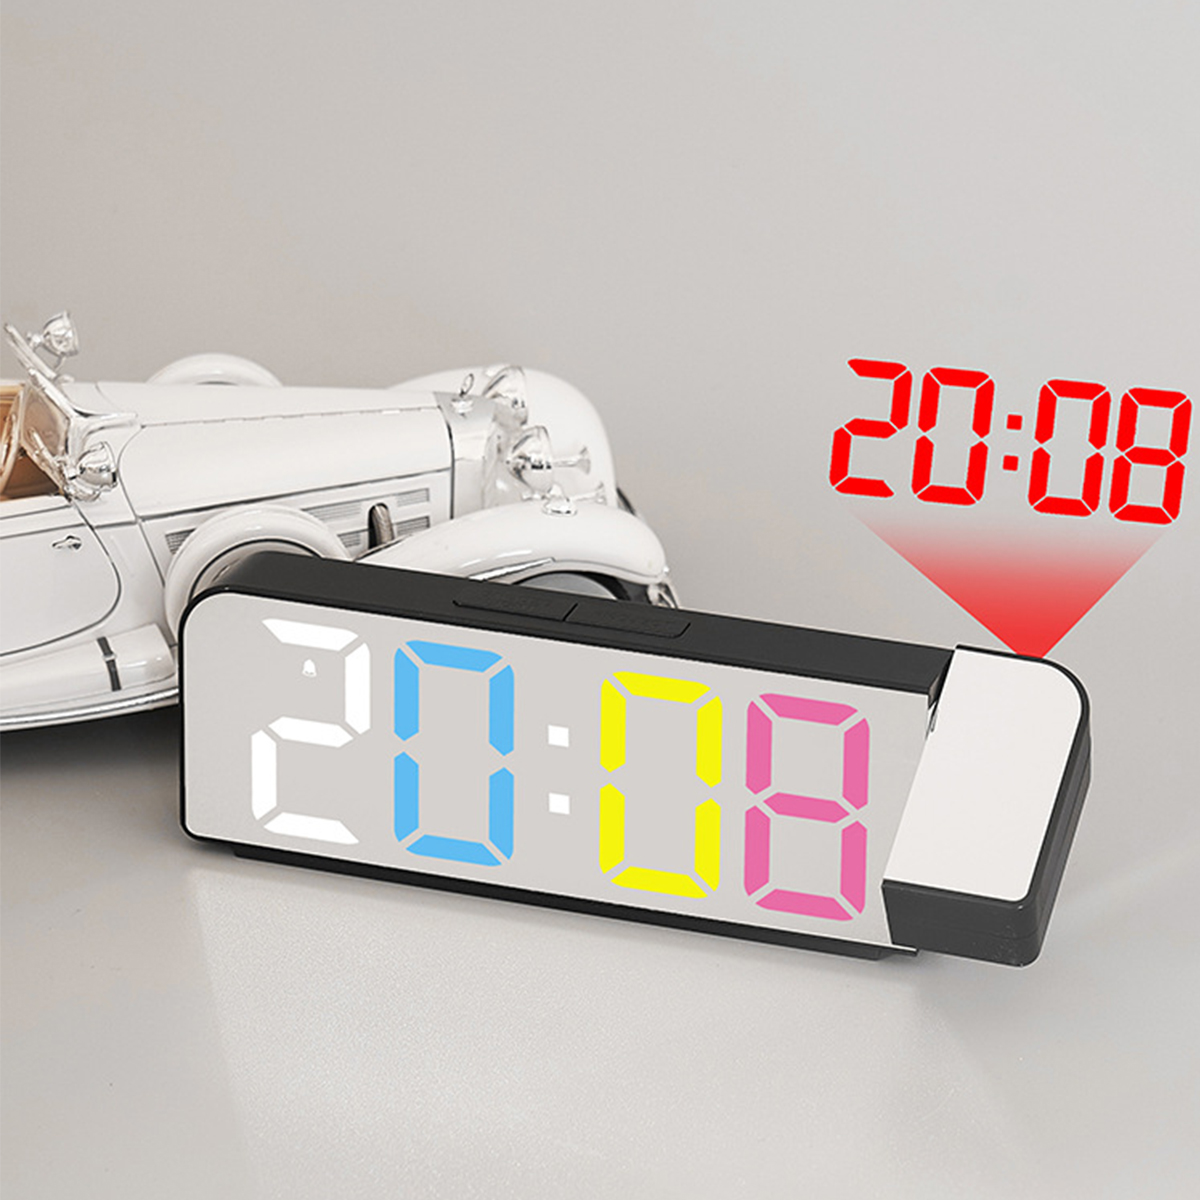 Uhr mit BRIGHTAKE und Projektionswecker LED-Anzeige Temperaturanzeige